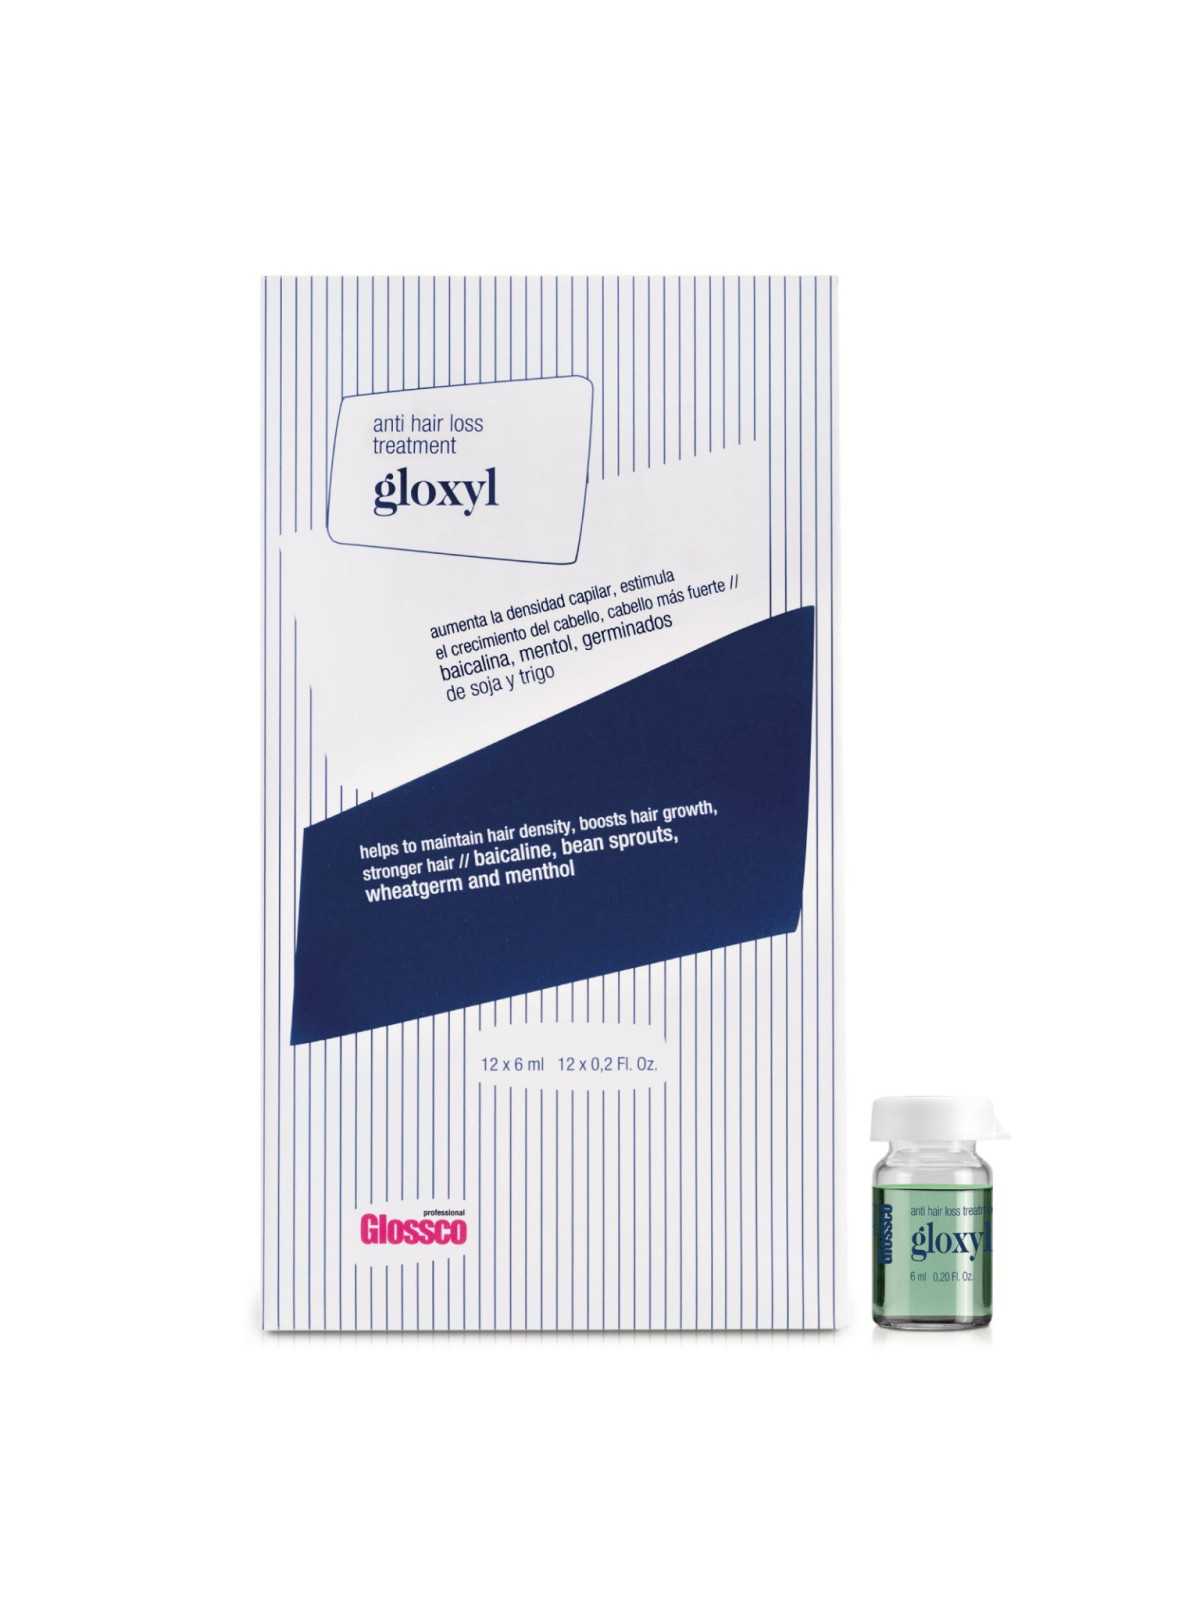 Comprar Glossco Gloxyl tratamiento ampollas anticaída 12*6ml en Inicio por sólo 13,93 € o un precio específico de 13,93 € en Thalie Care